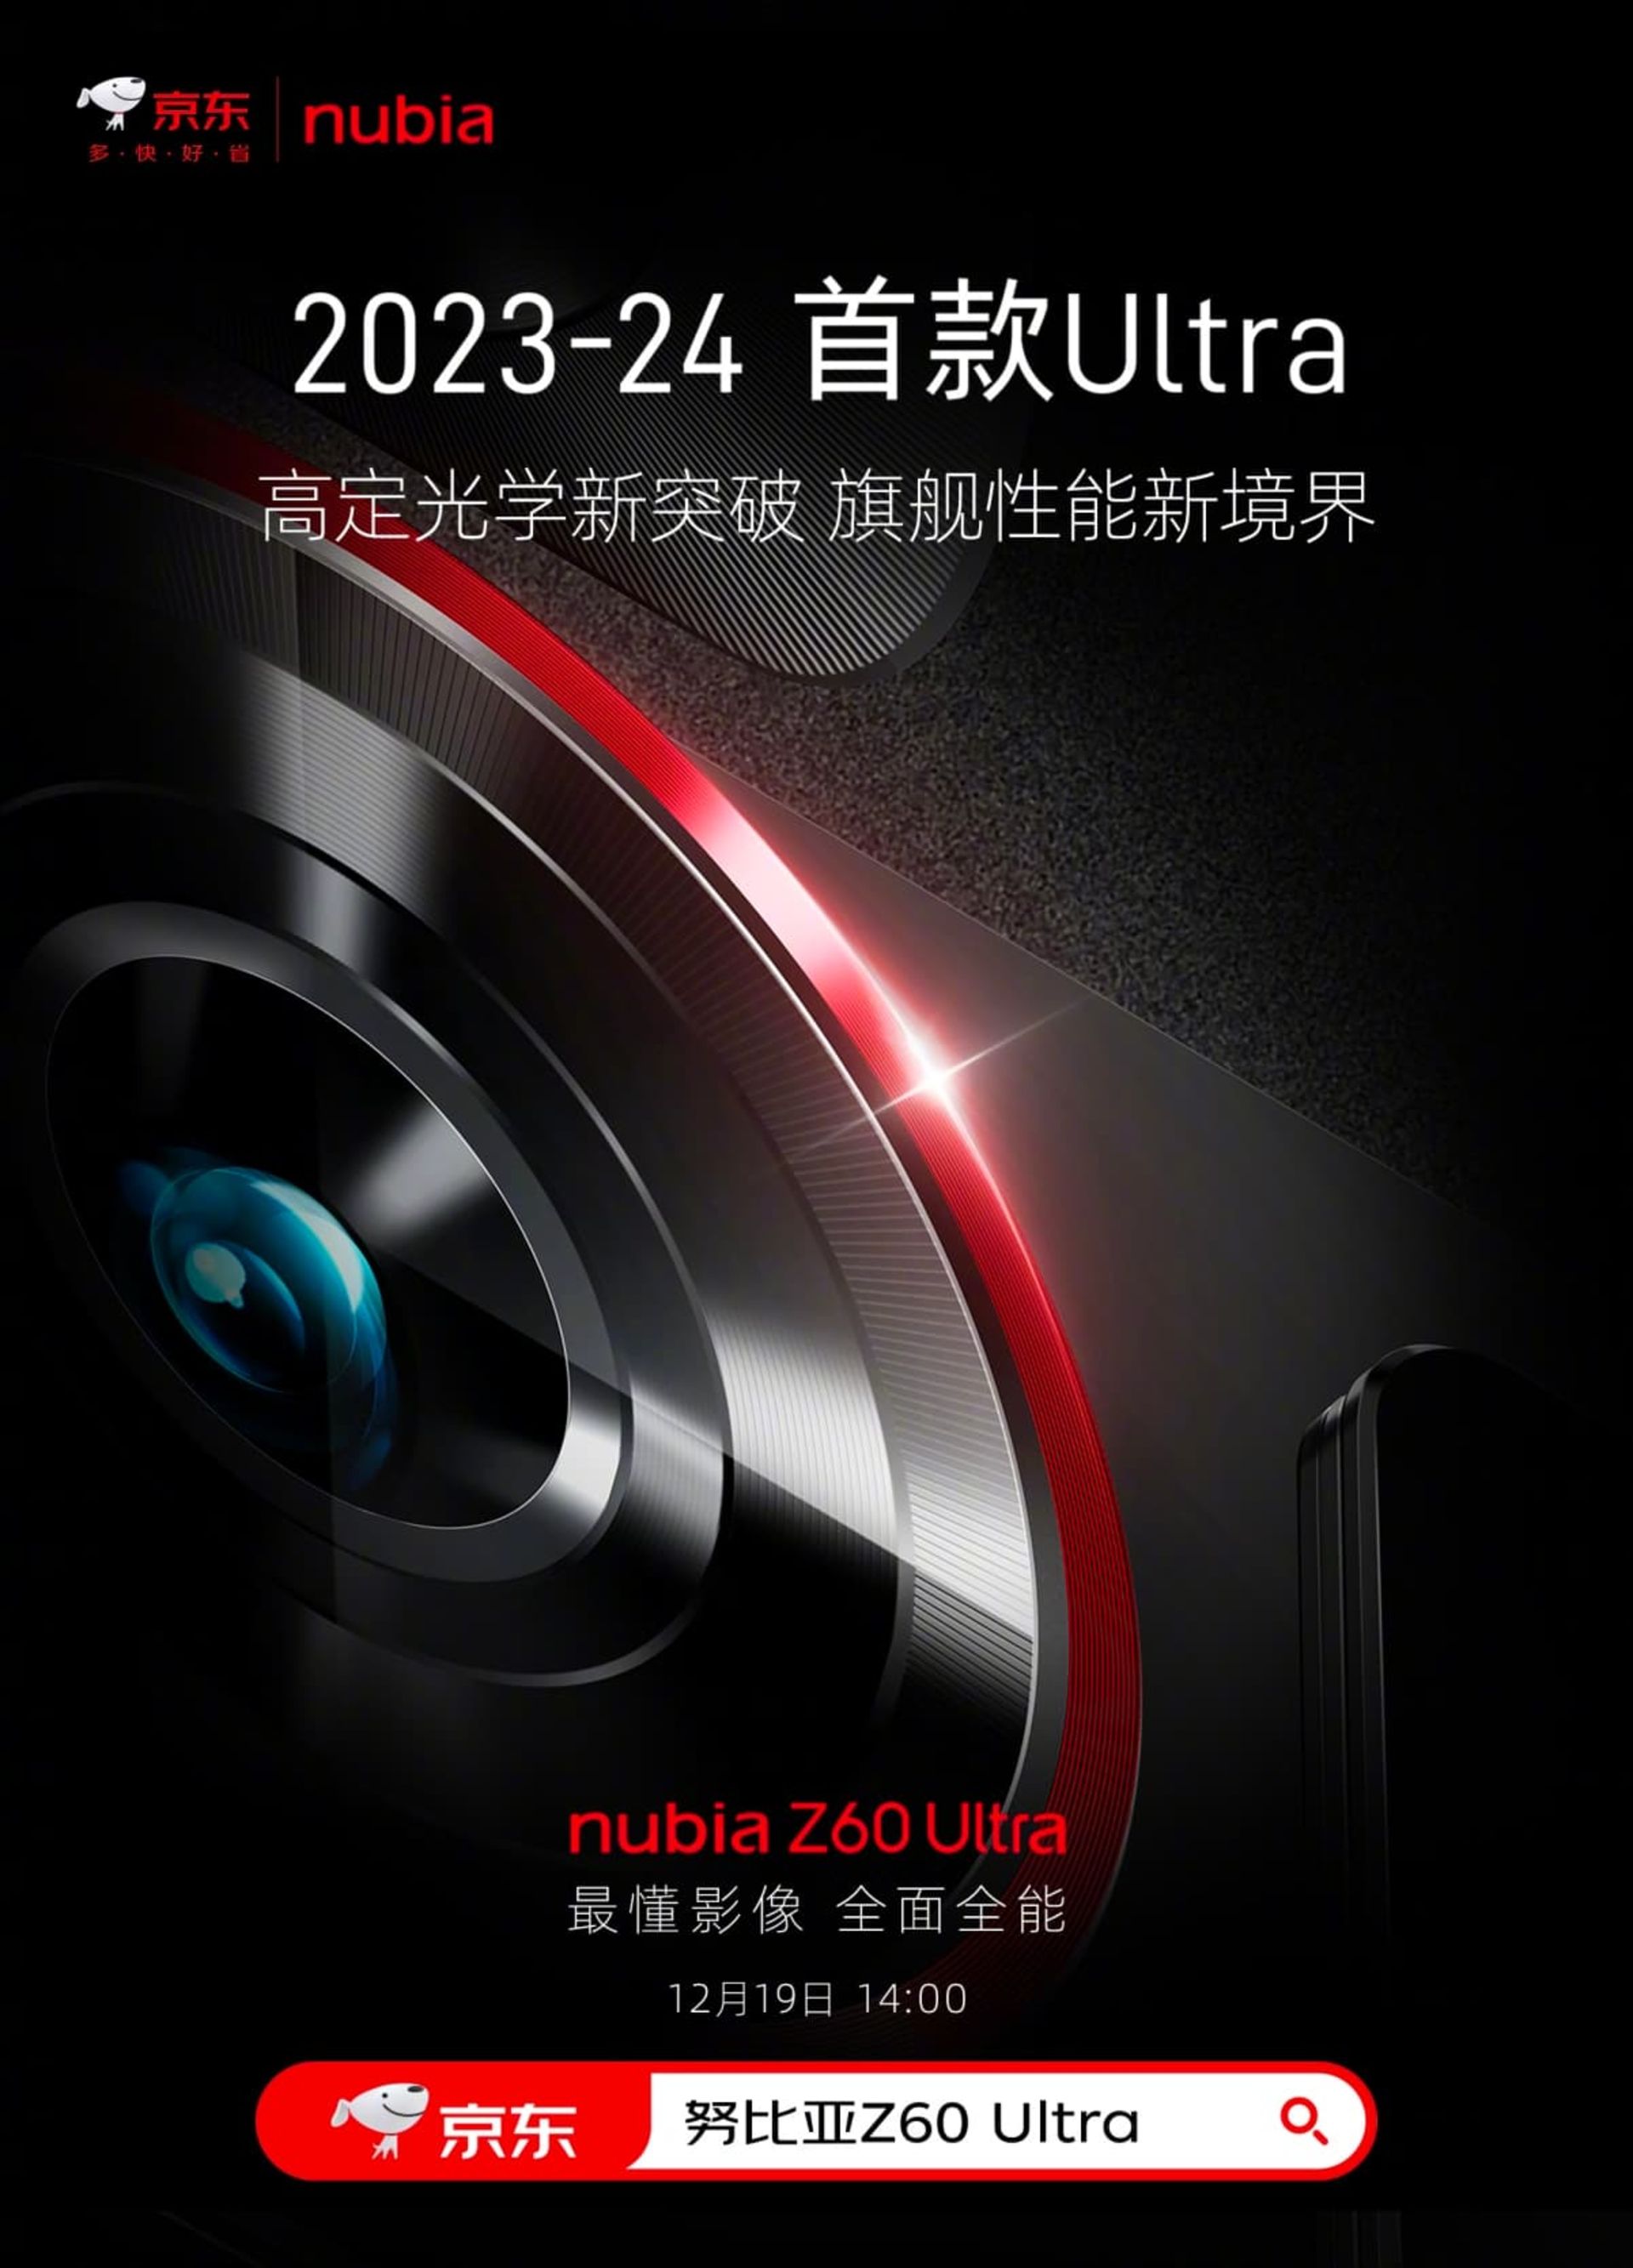 نمای نزدیک دوربین اصلی در پوستر گوشی نوبیا Z60 Ultra